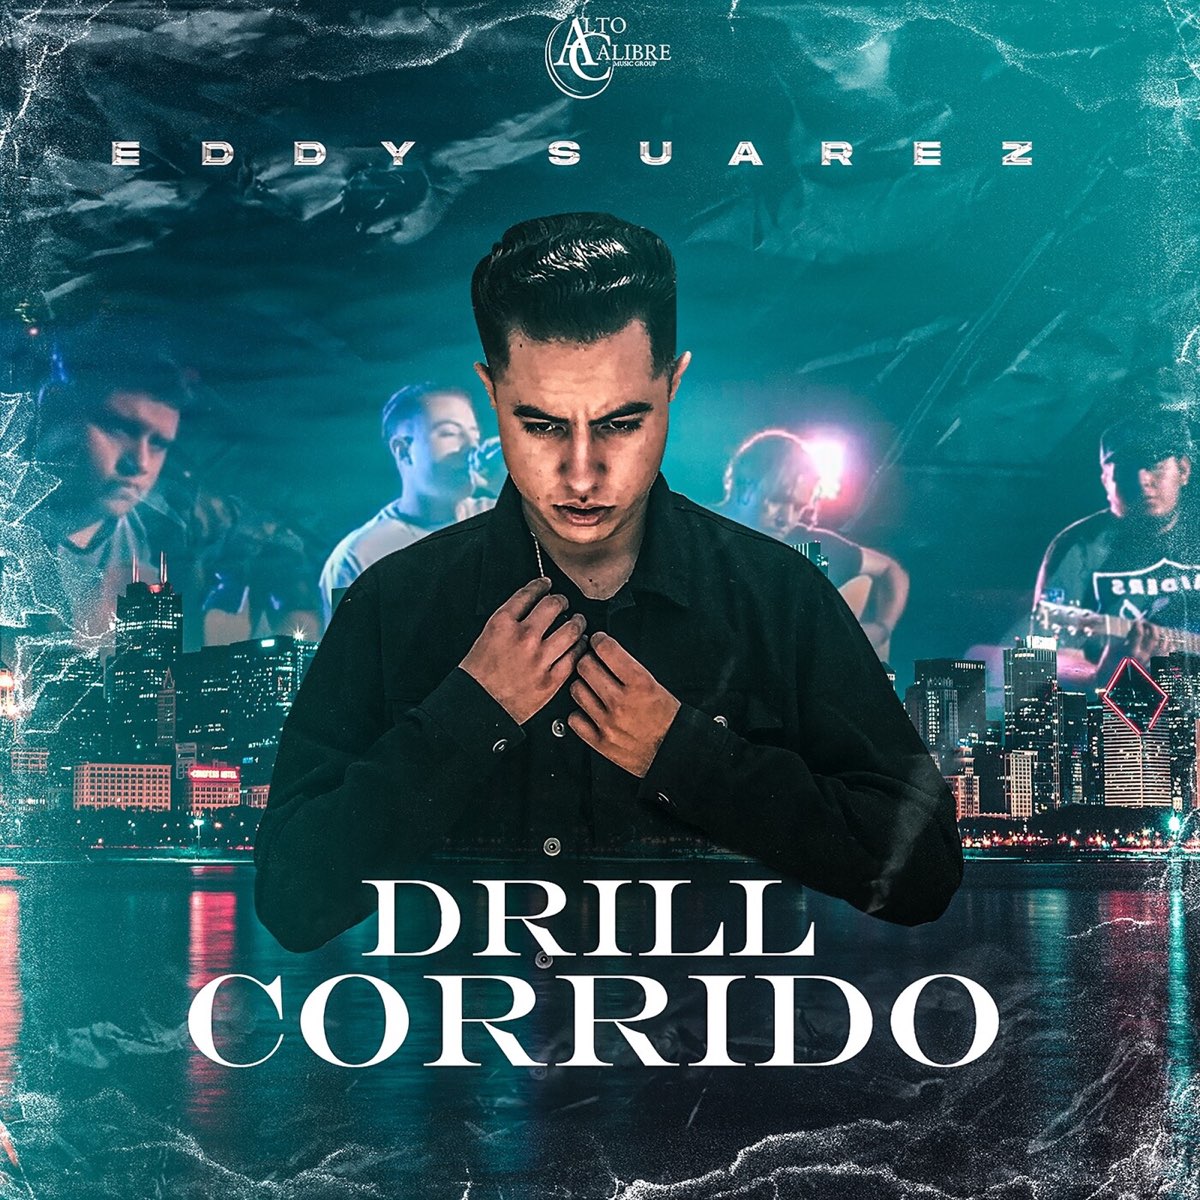 Drill Corrido - Single - Album by Eddy Suarez - Apple Music